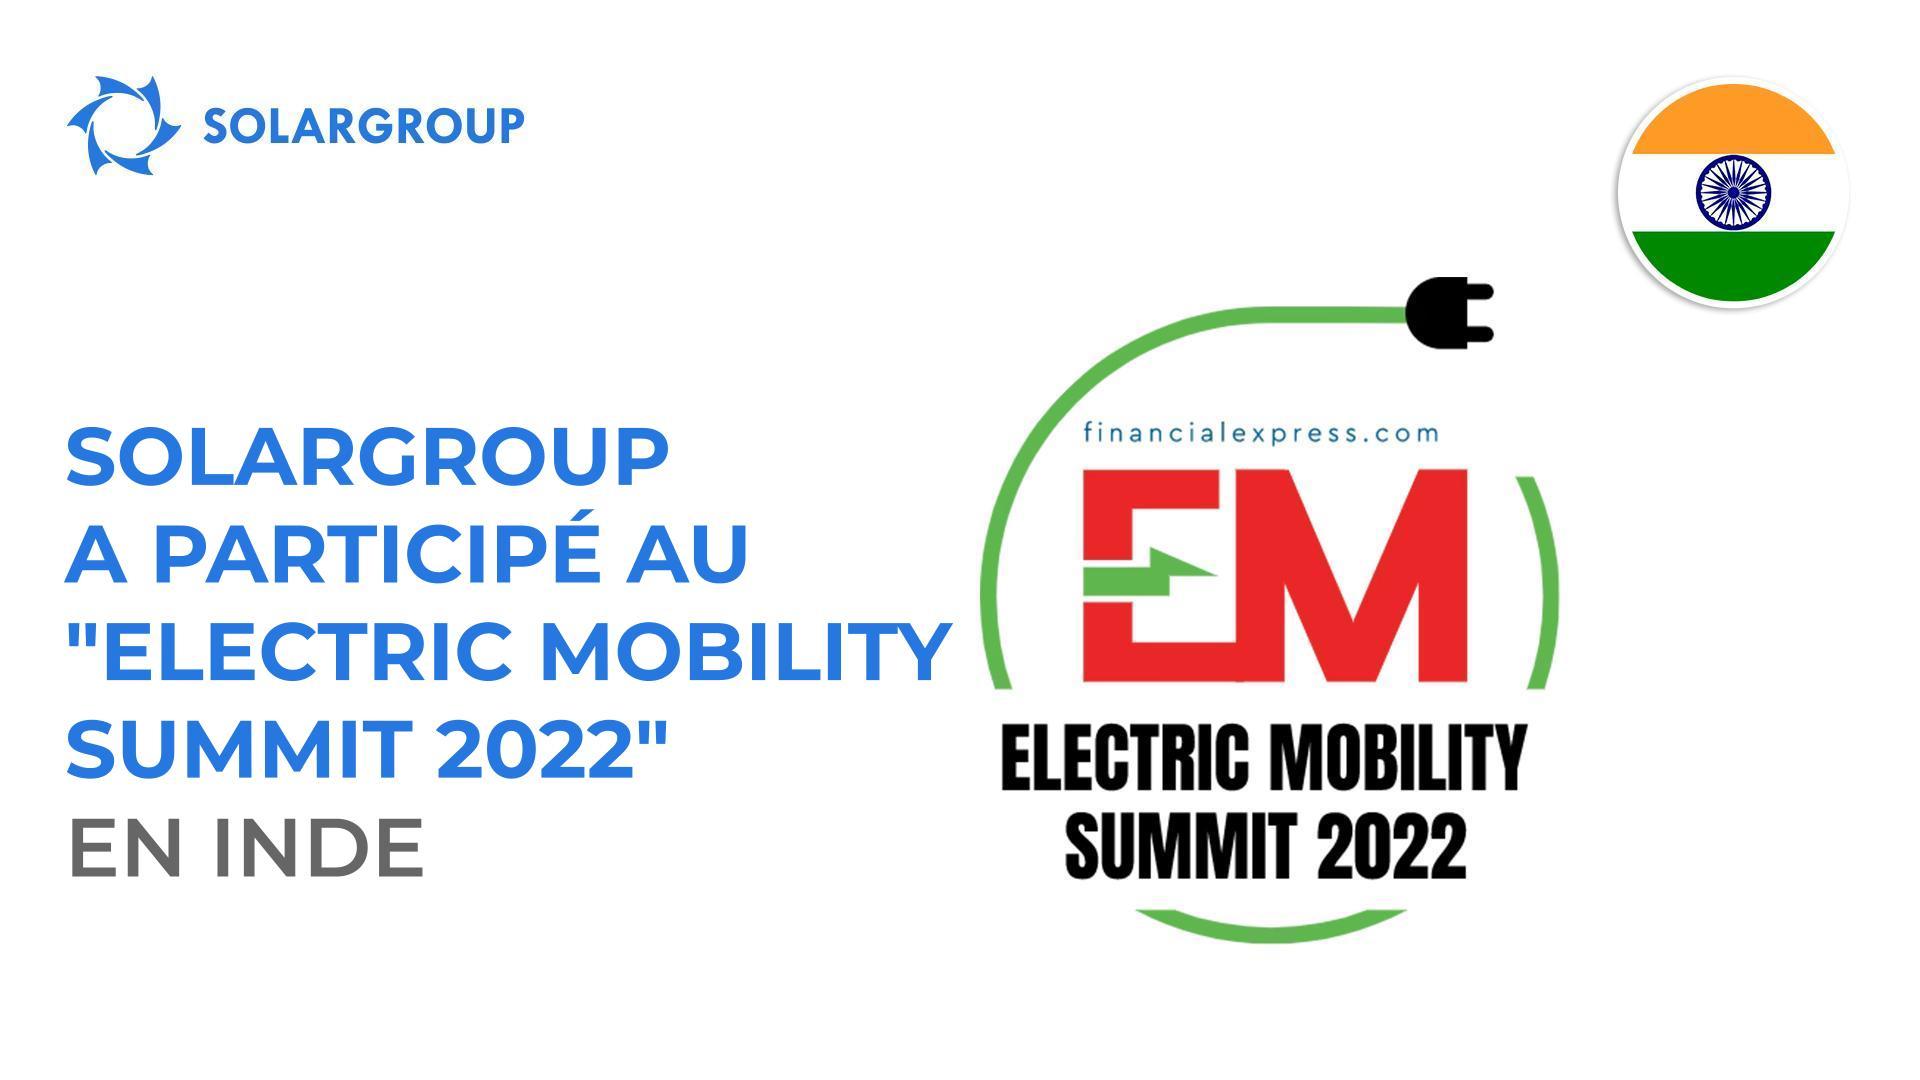 SOLARGROUP a participé au "Electric Mobility Summit 2022" en Inde